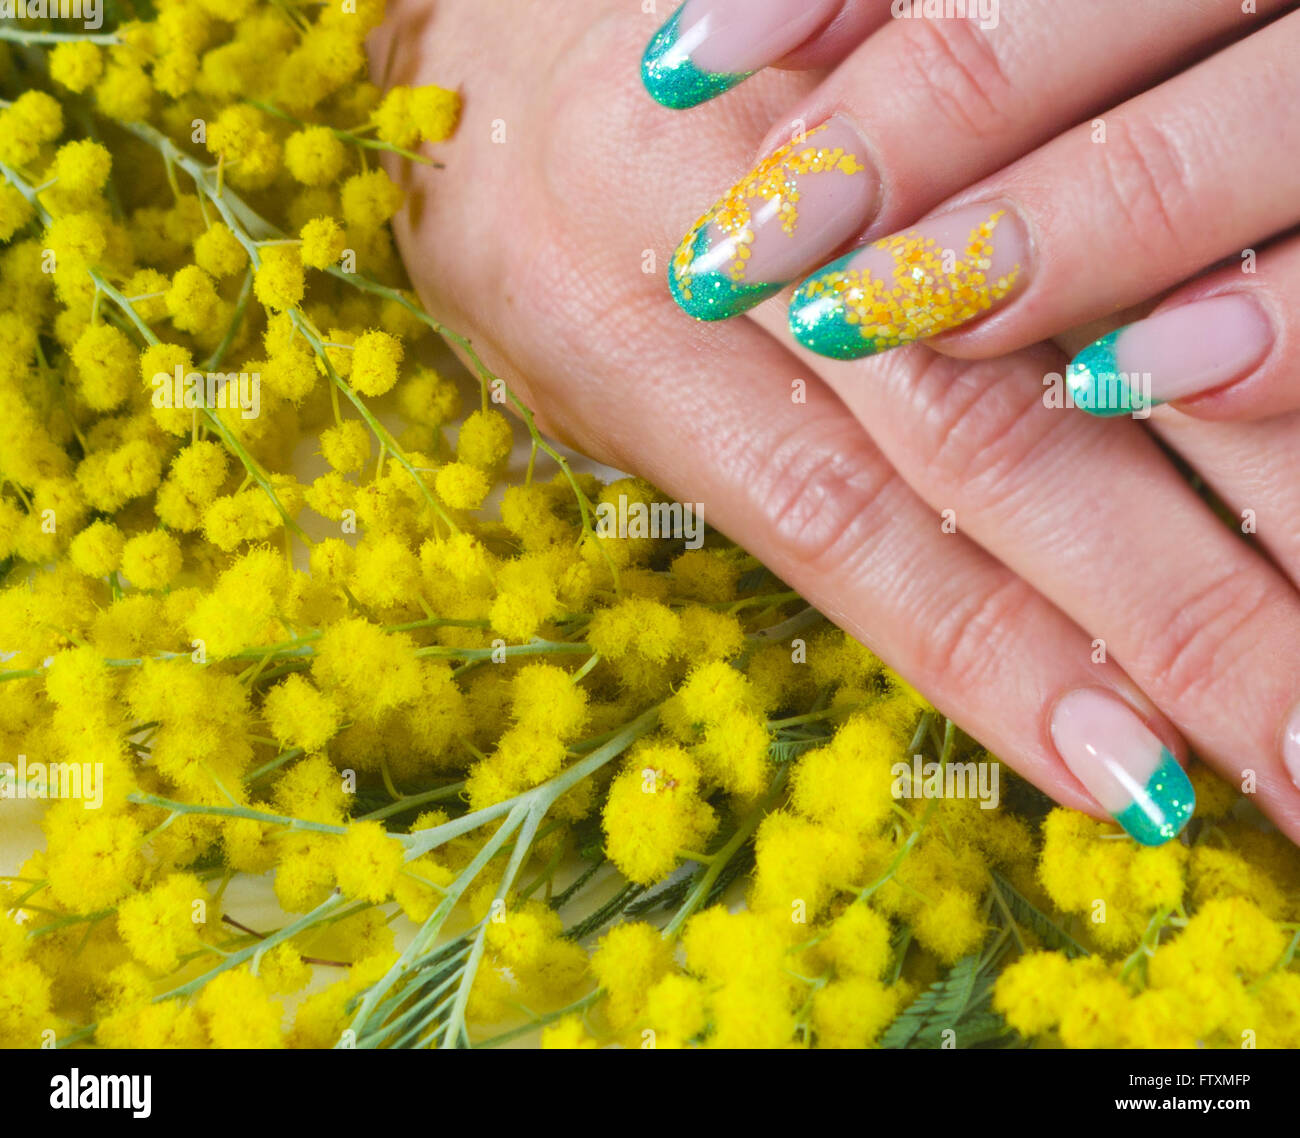 Spring Flower Nail Art Design Stock Photo 1716016579 | Shutterstock